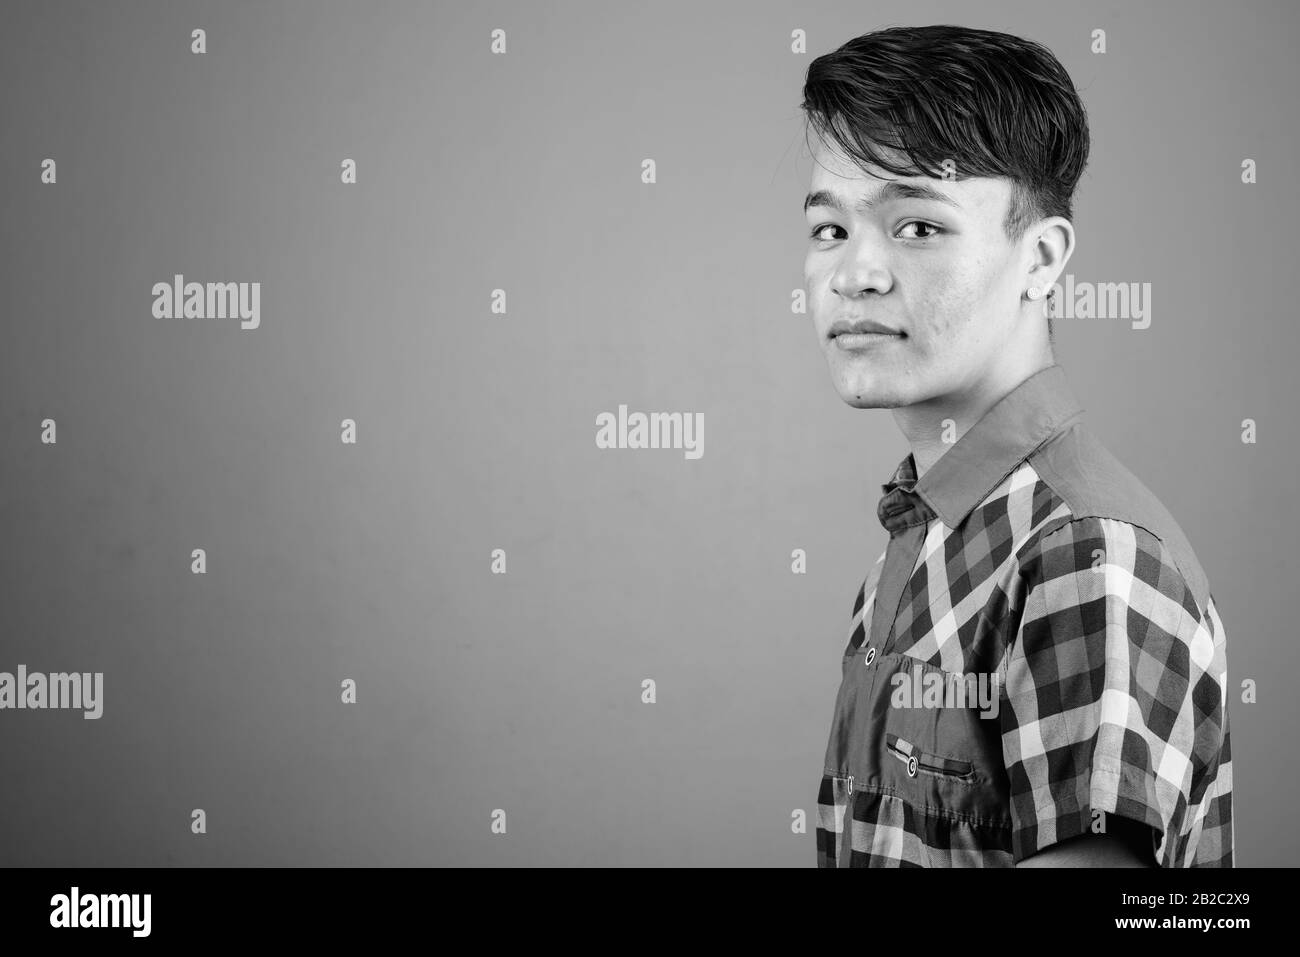 Porträt des jungen gutaussehenden asiatischen Teenagers Stockfoto